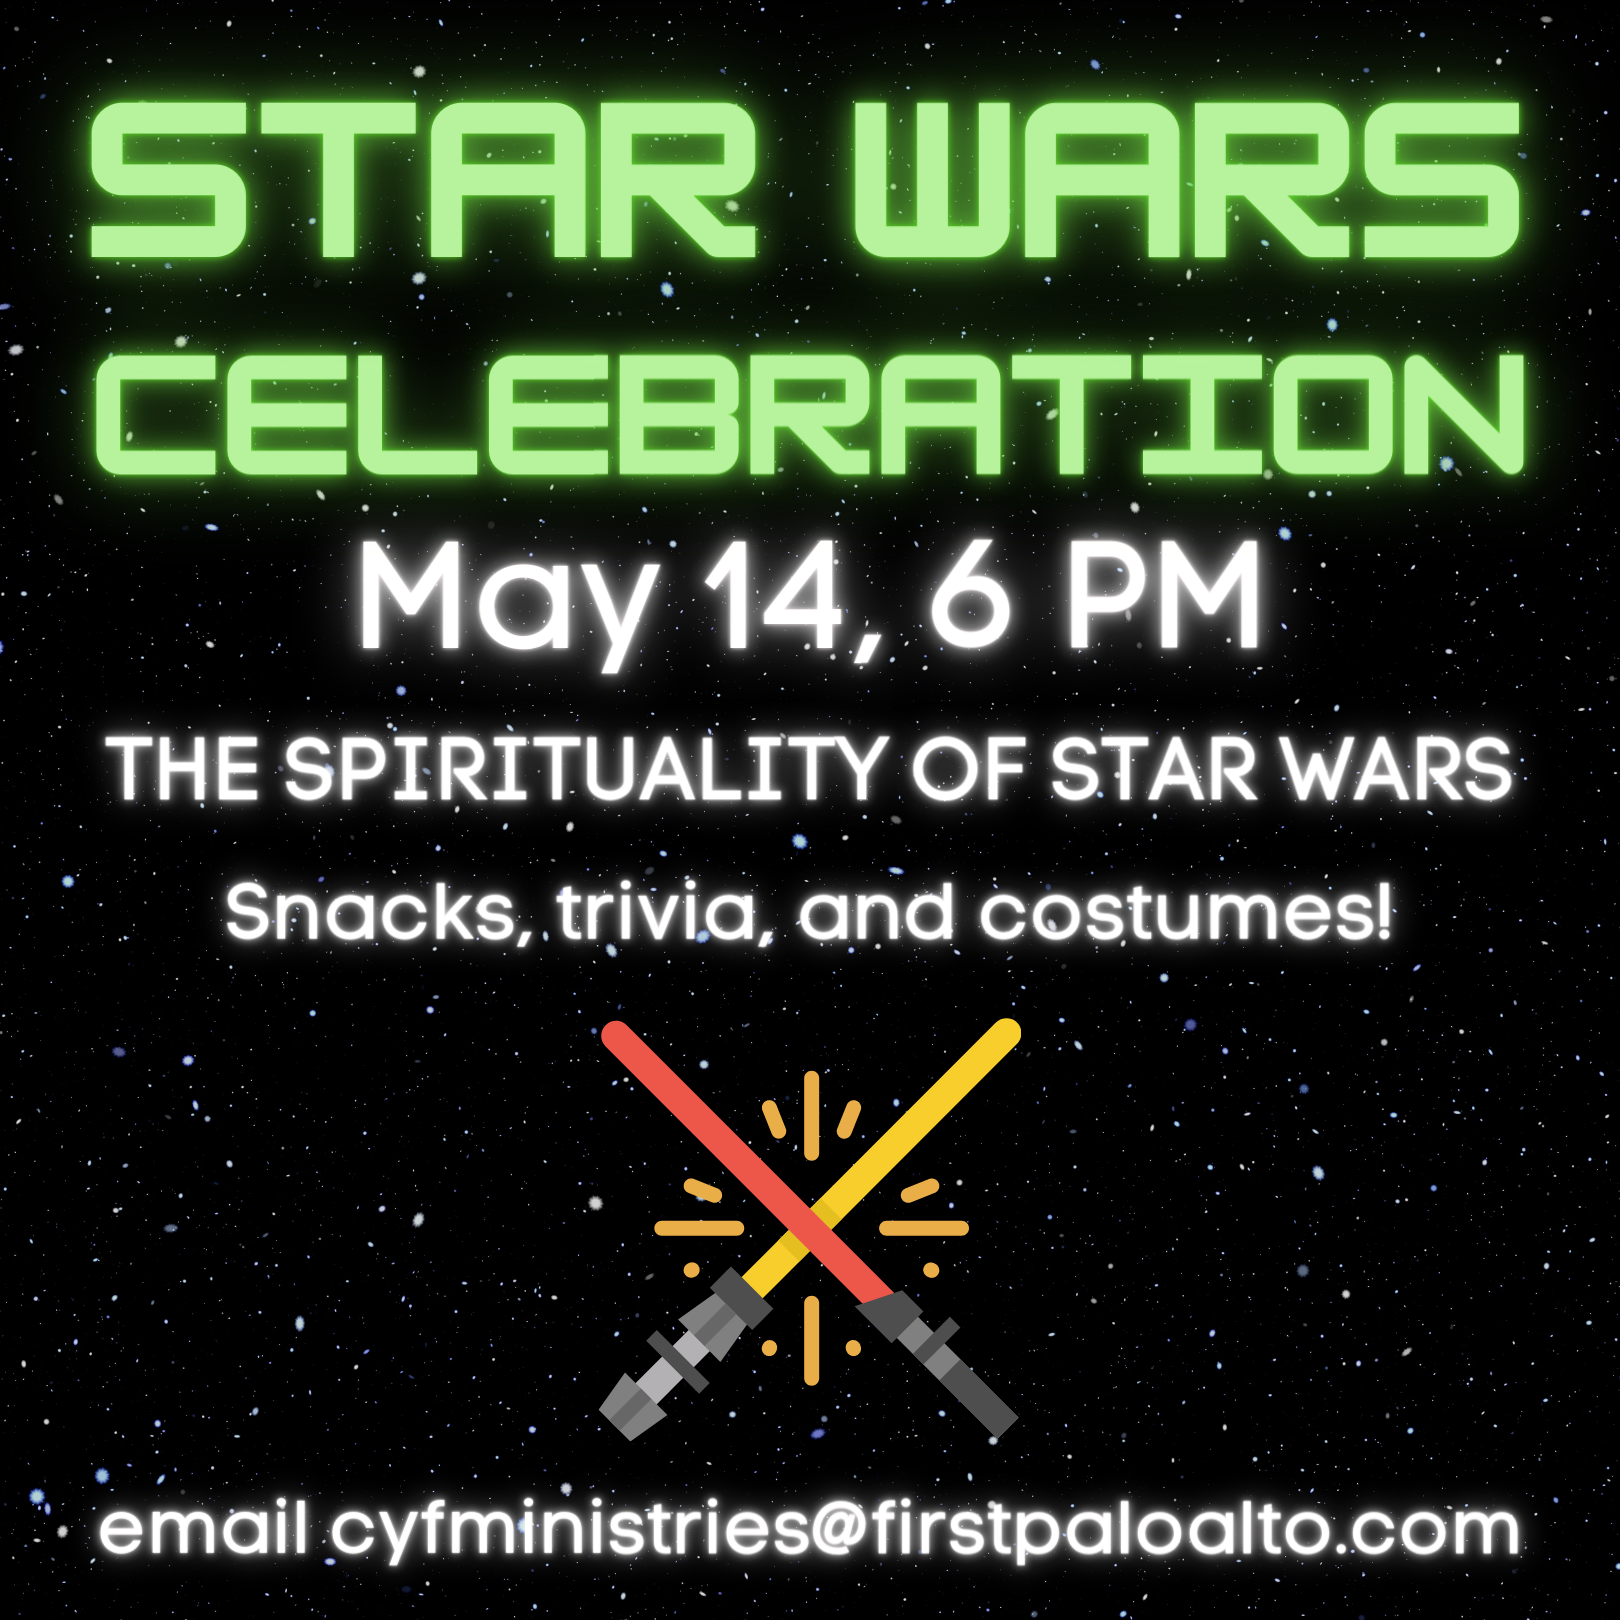 Star-Wars-Celebration-updated